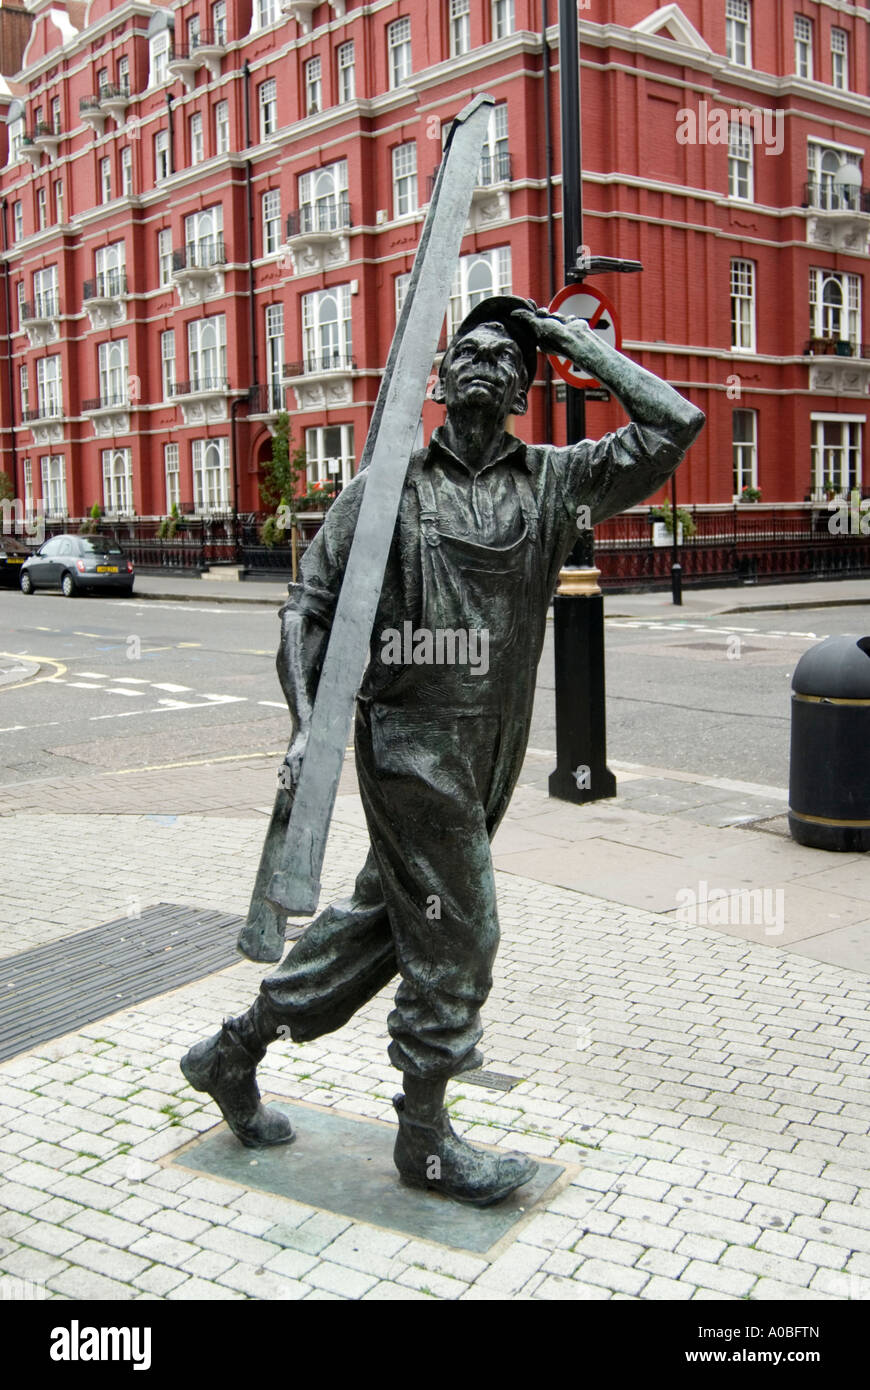 Sculpture de workman exerçant son bain, London England UK Banque D'Images